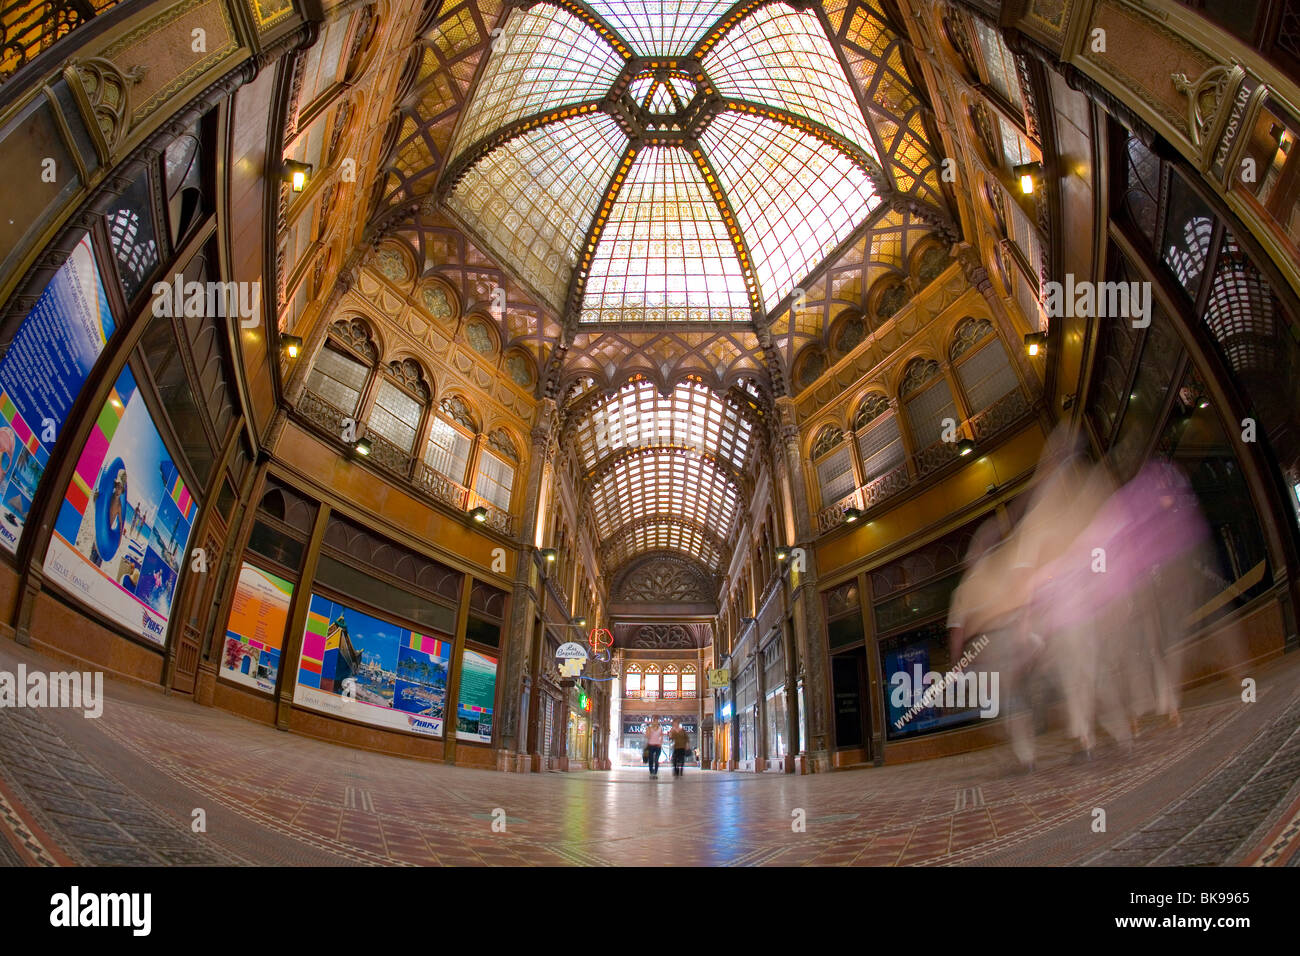 Historic shopping mall, Parisi udvar, Budapest, Hungary, Eastern Europe Stock Photo